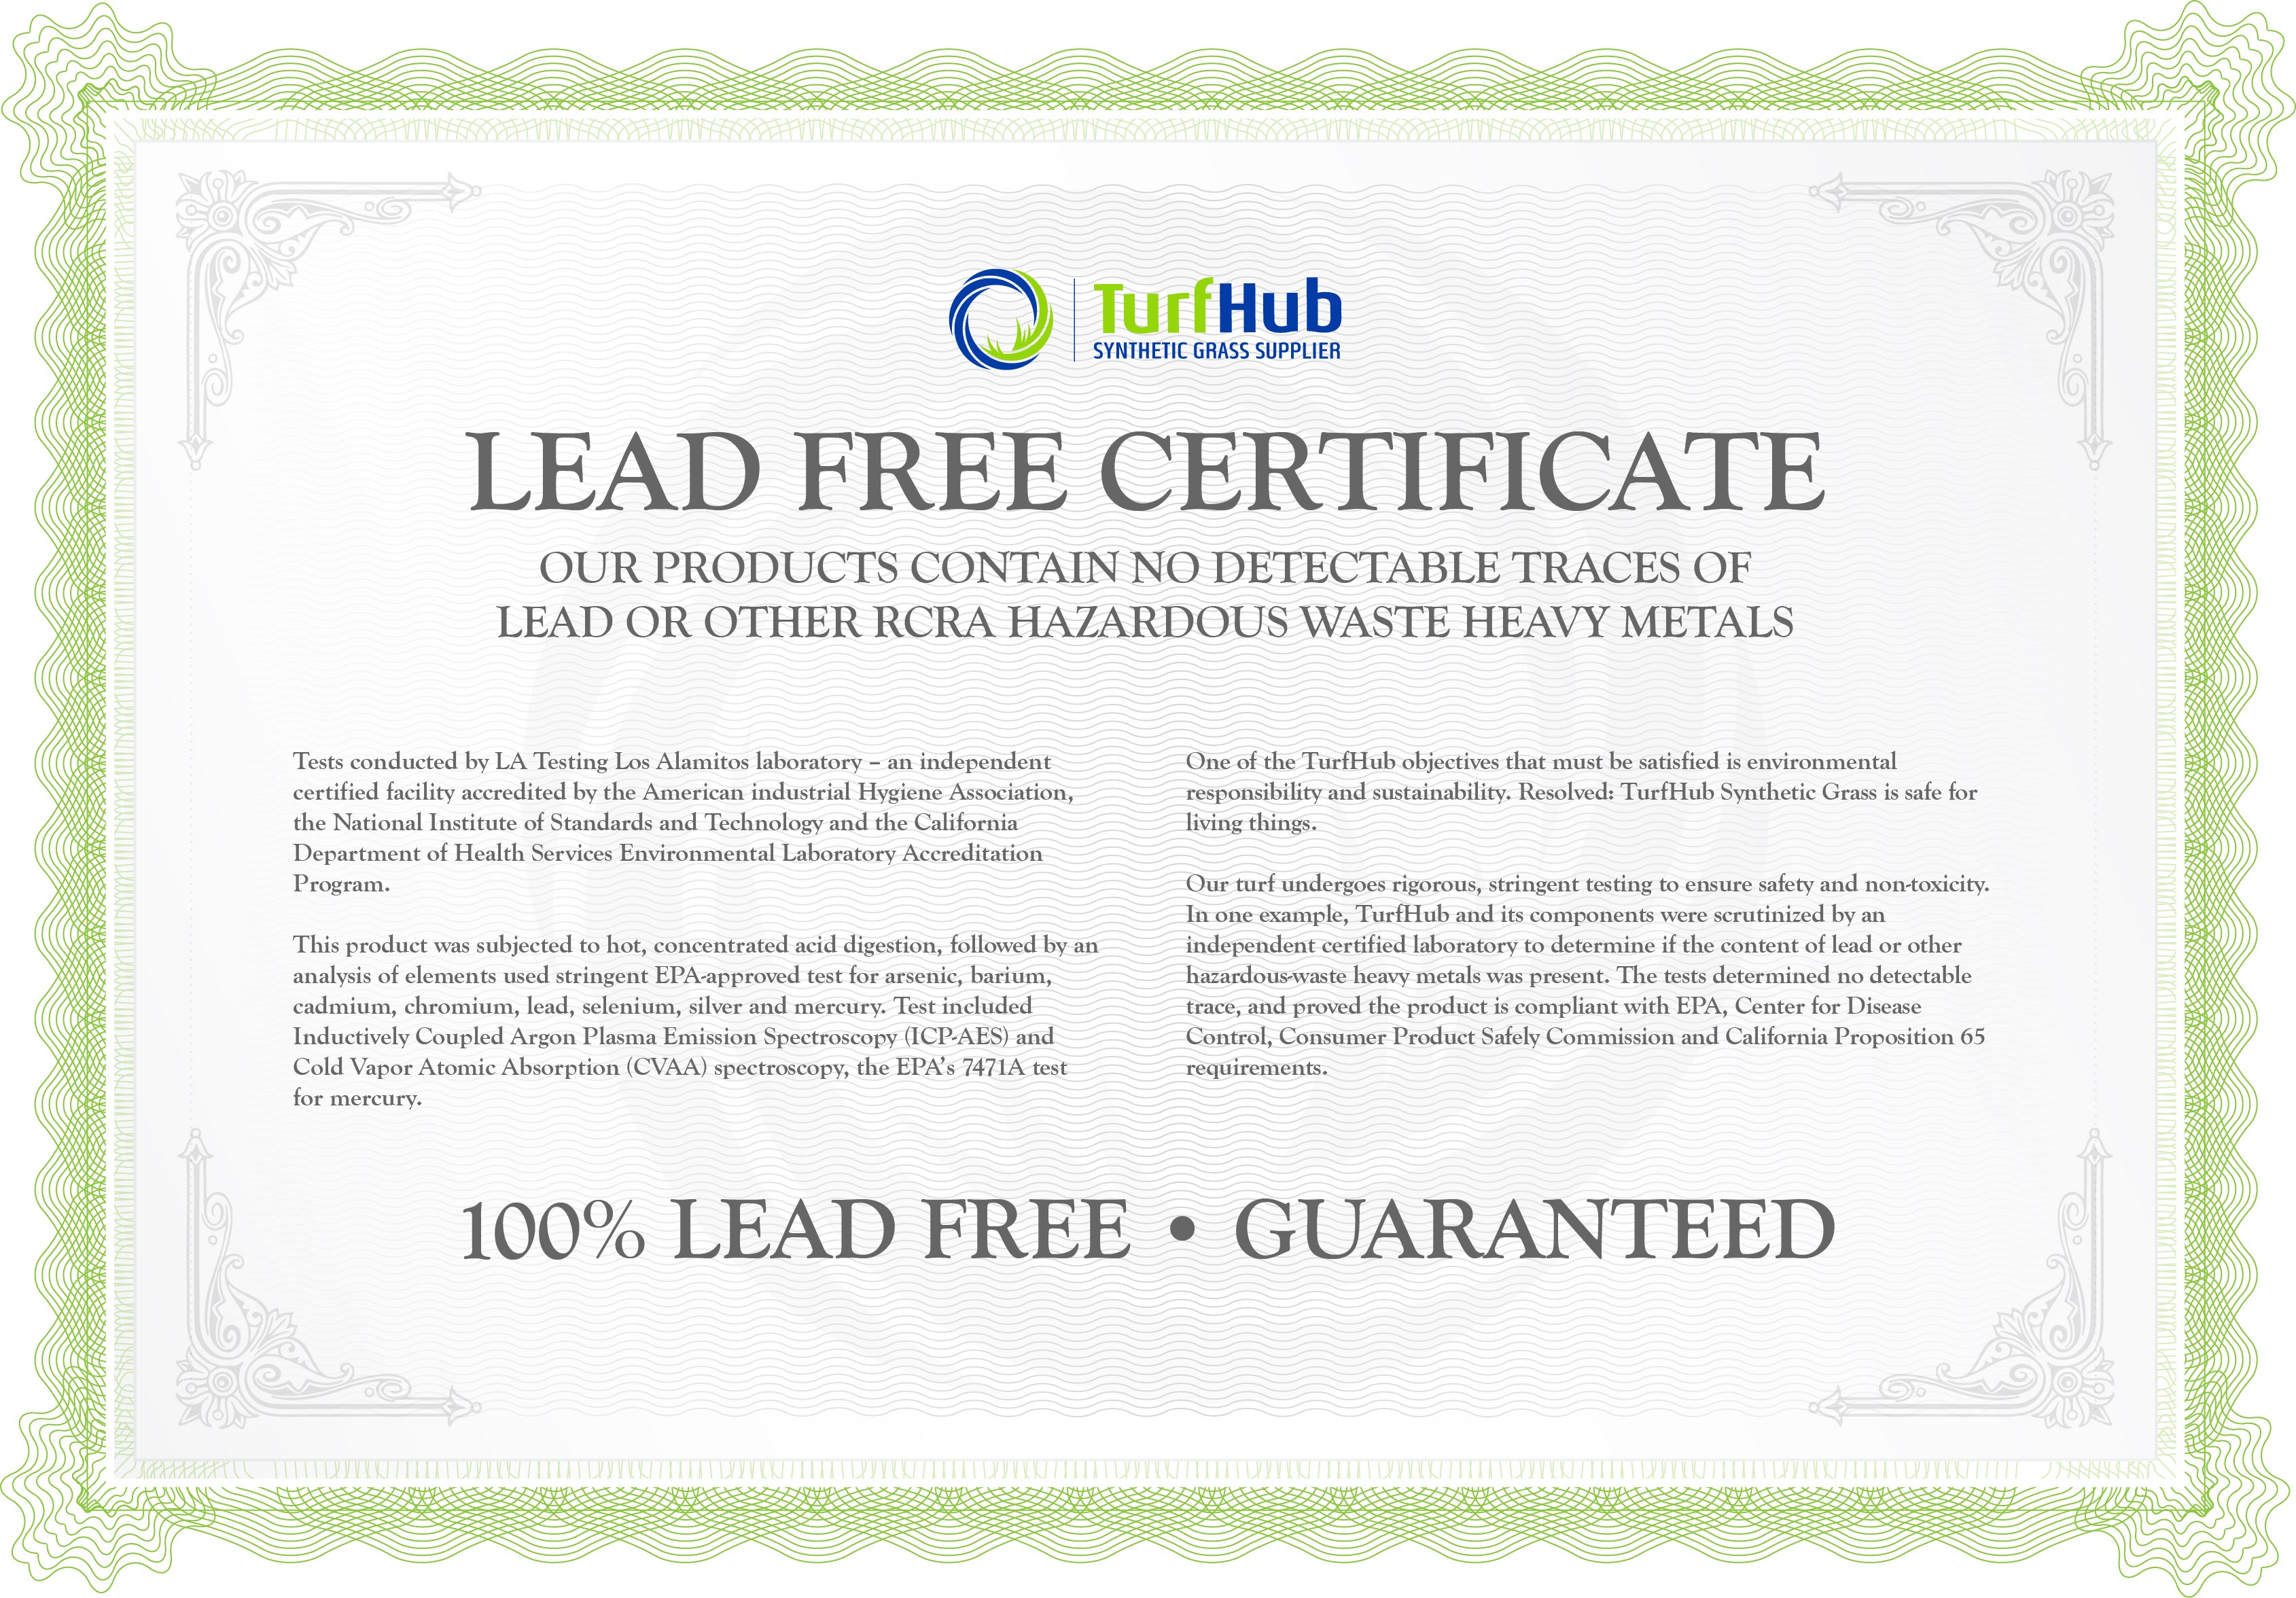 turfhub lead free certificate